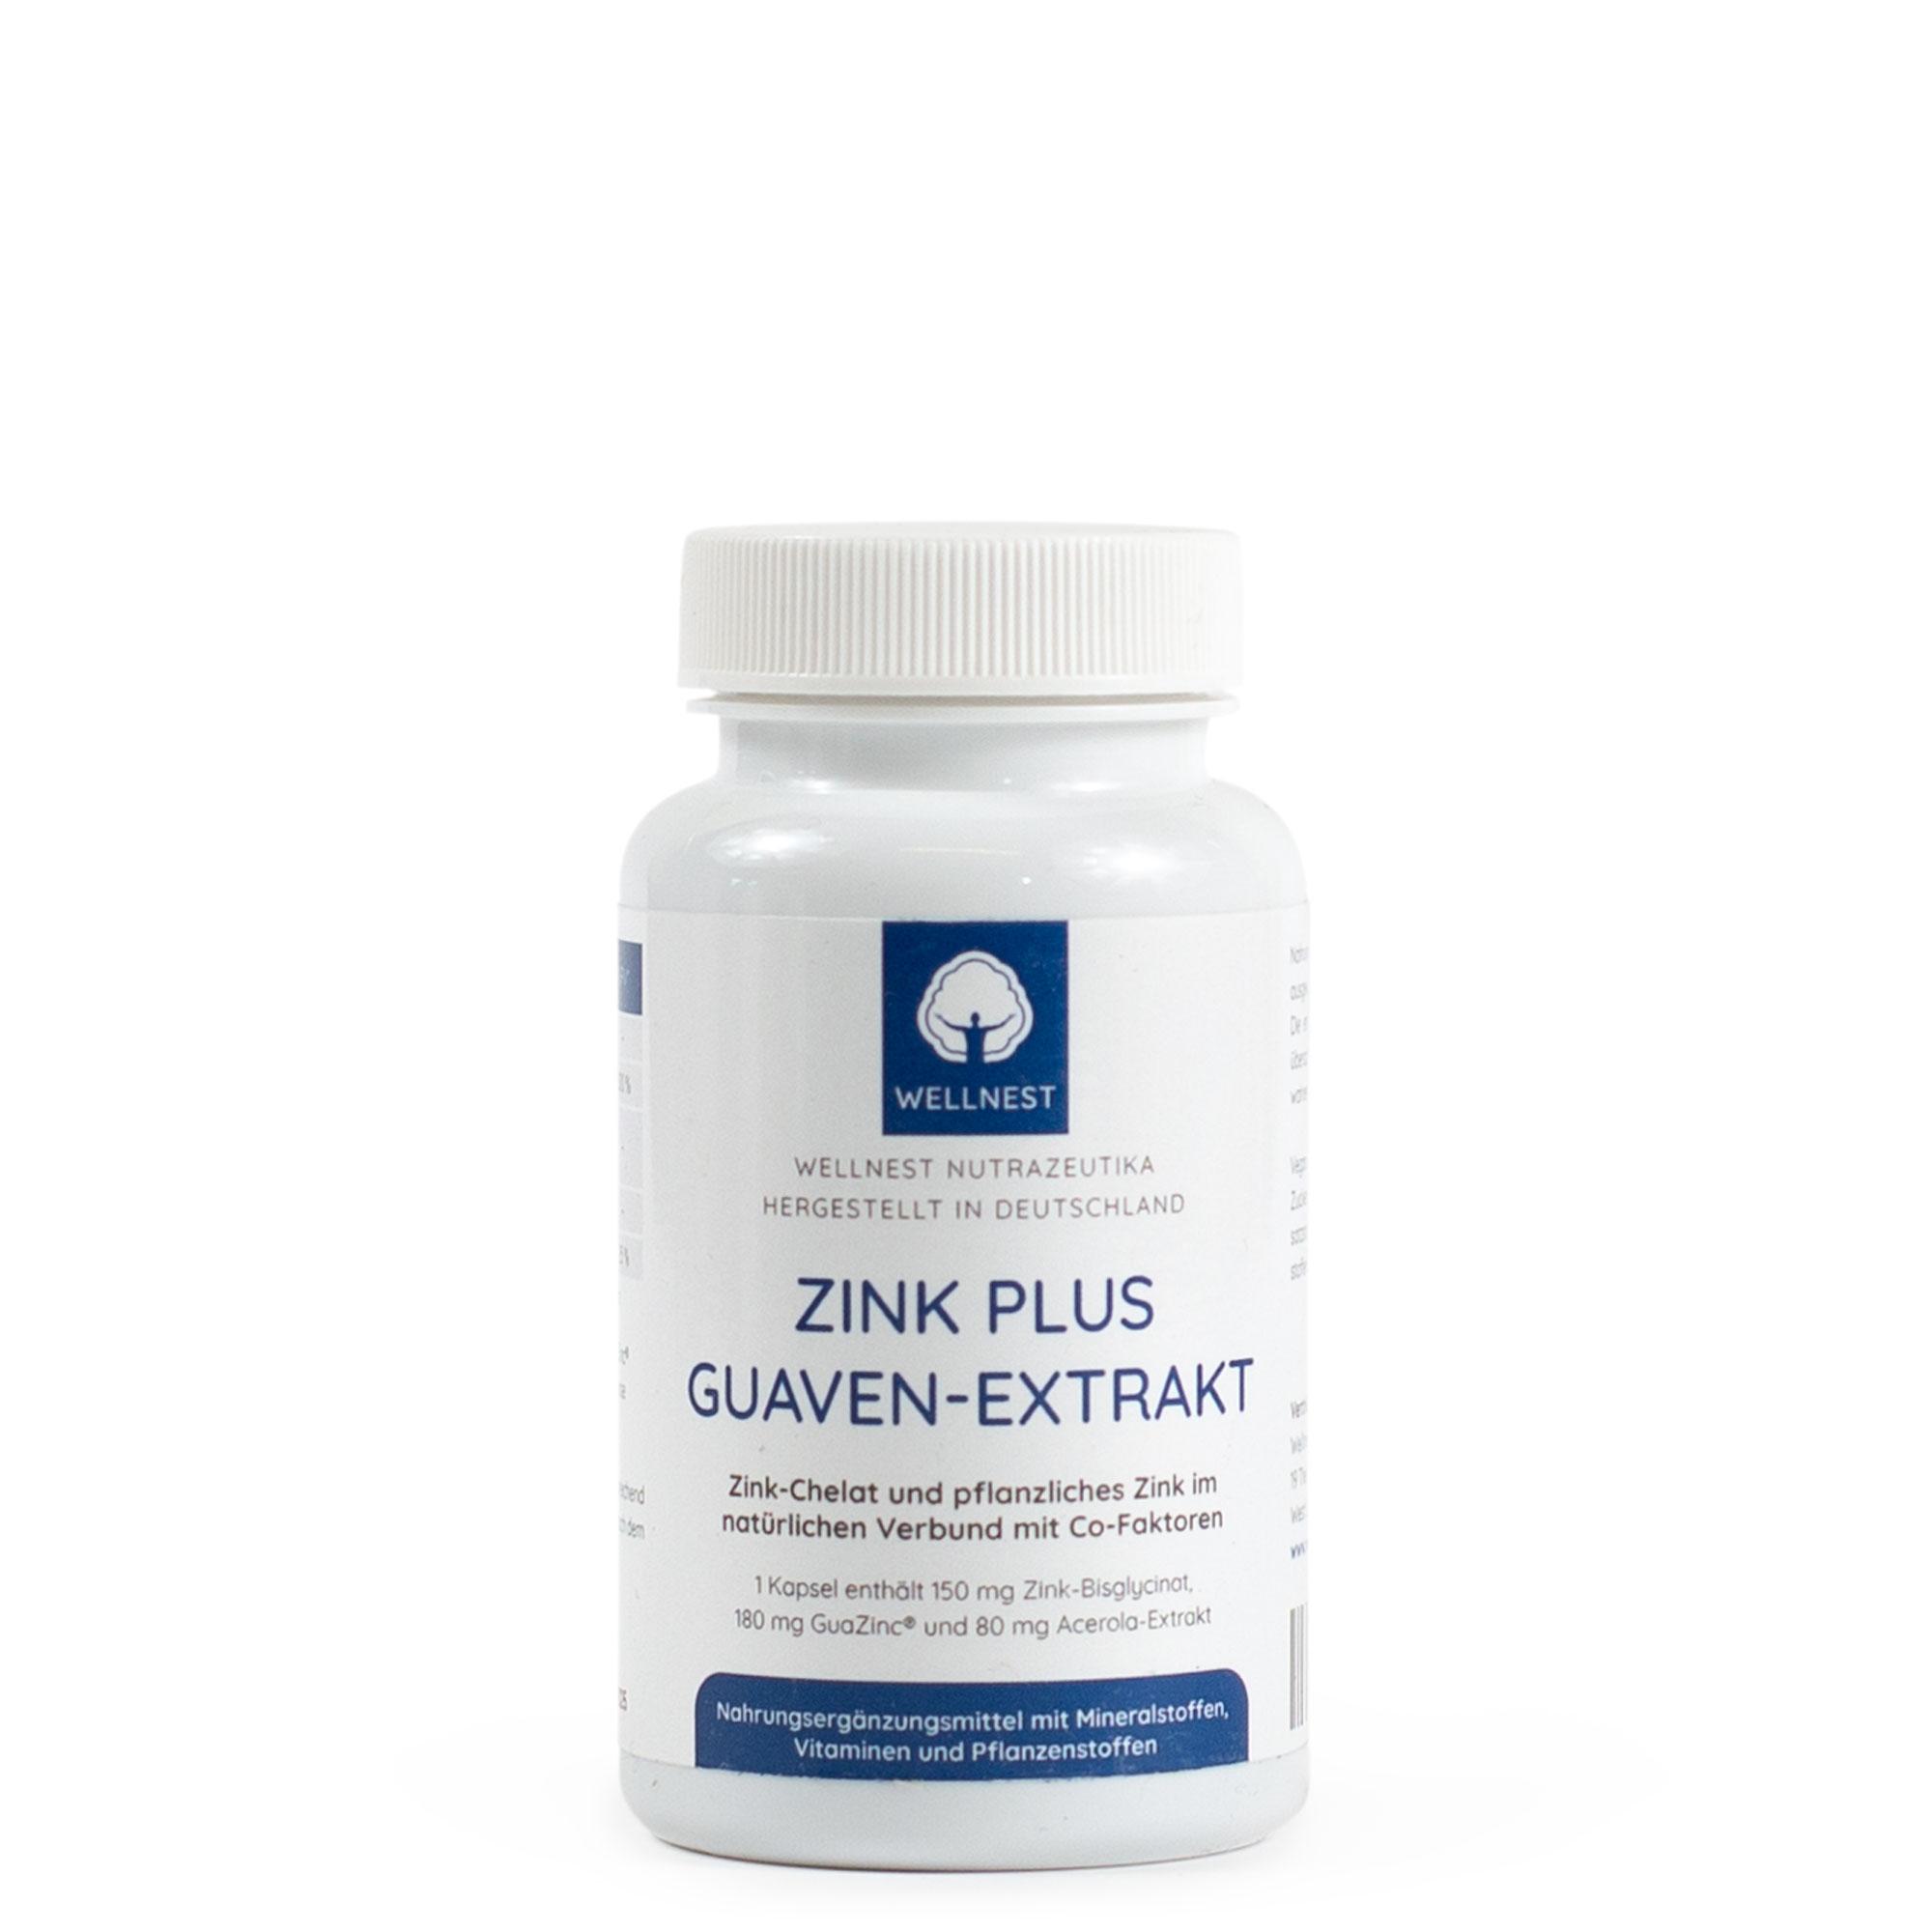 Zink-Bisglycinat 30 mg Guaven-Extrakt GuaZinc® von Wellnest